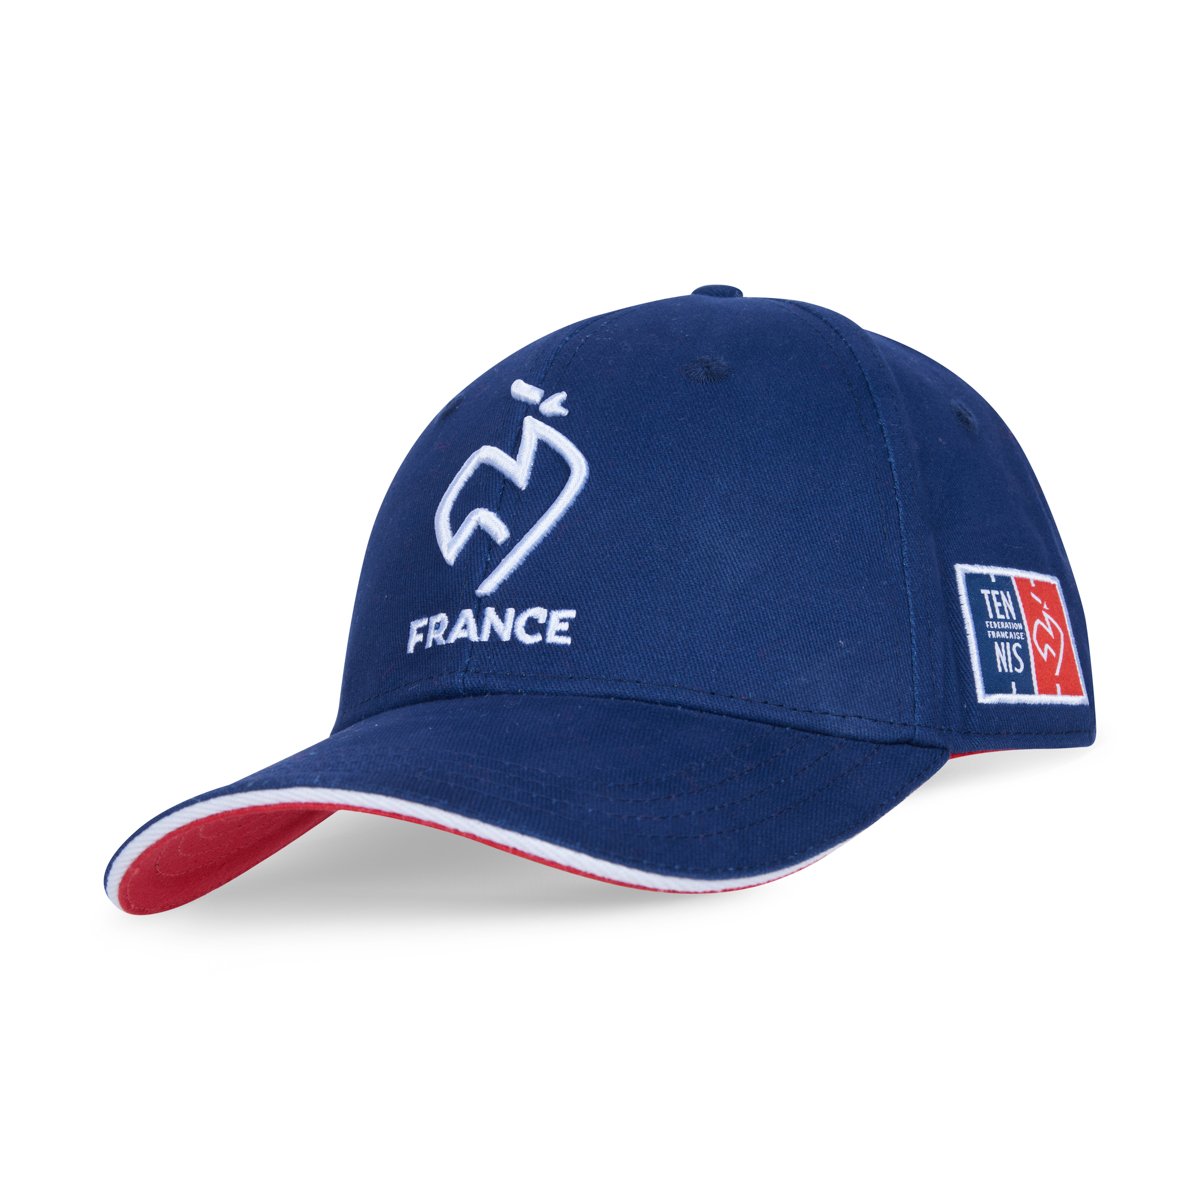 FFT cap - Navy | Roland-Garros Store